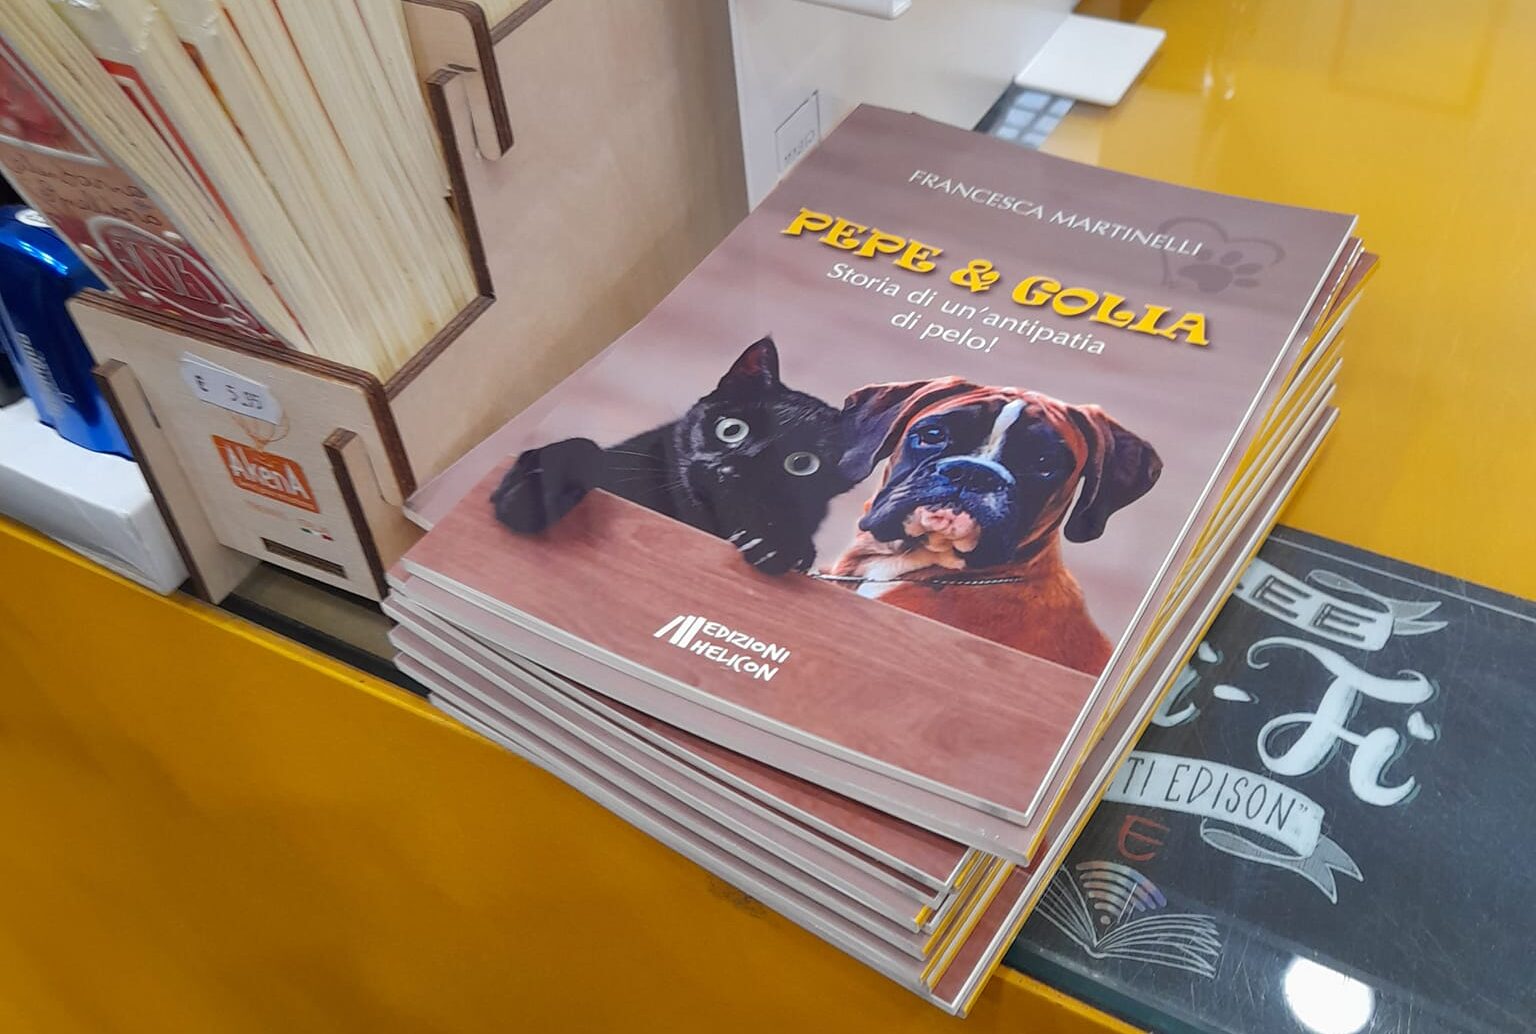 In libreria “Pepe & Golia”, libro della scrittrice aretina Francesca Martinelli